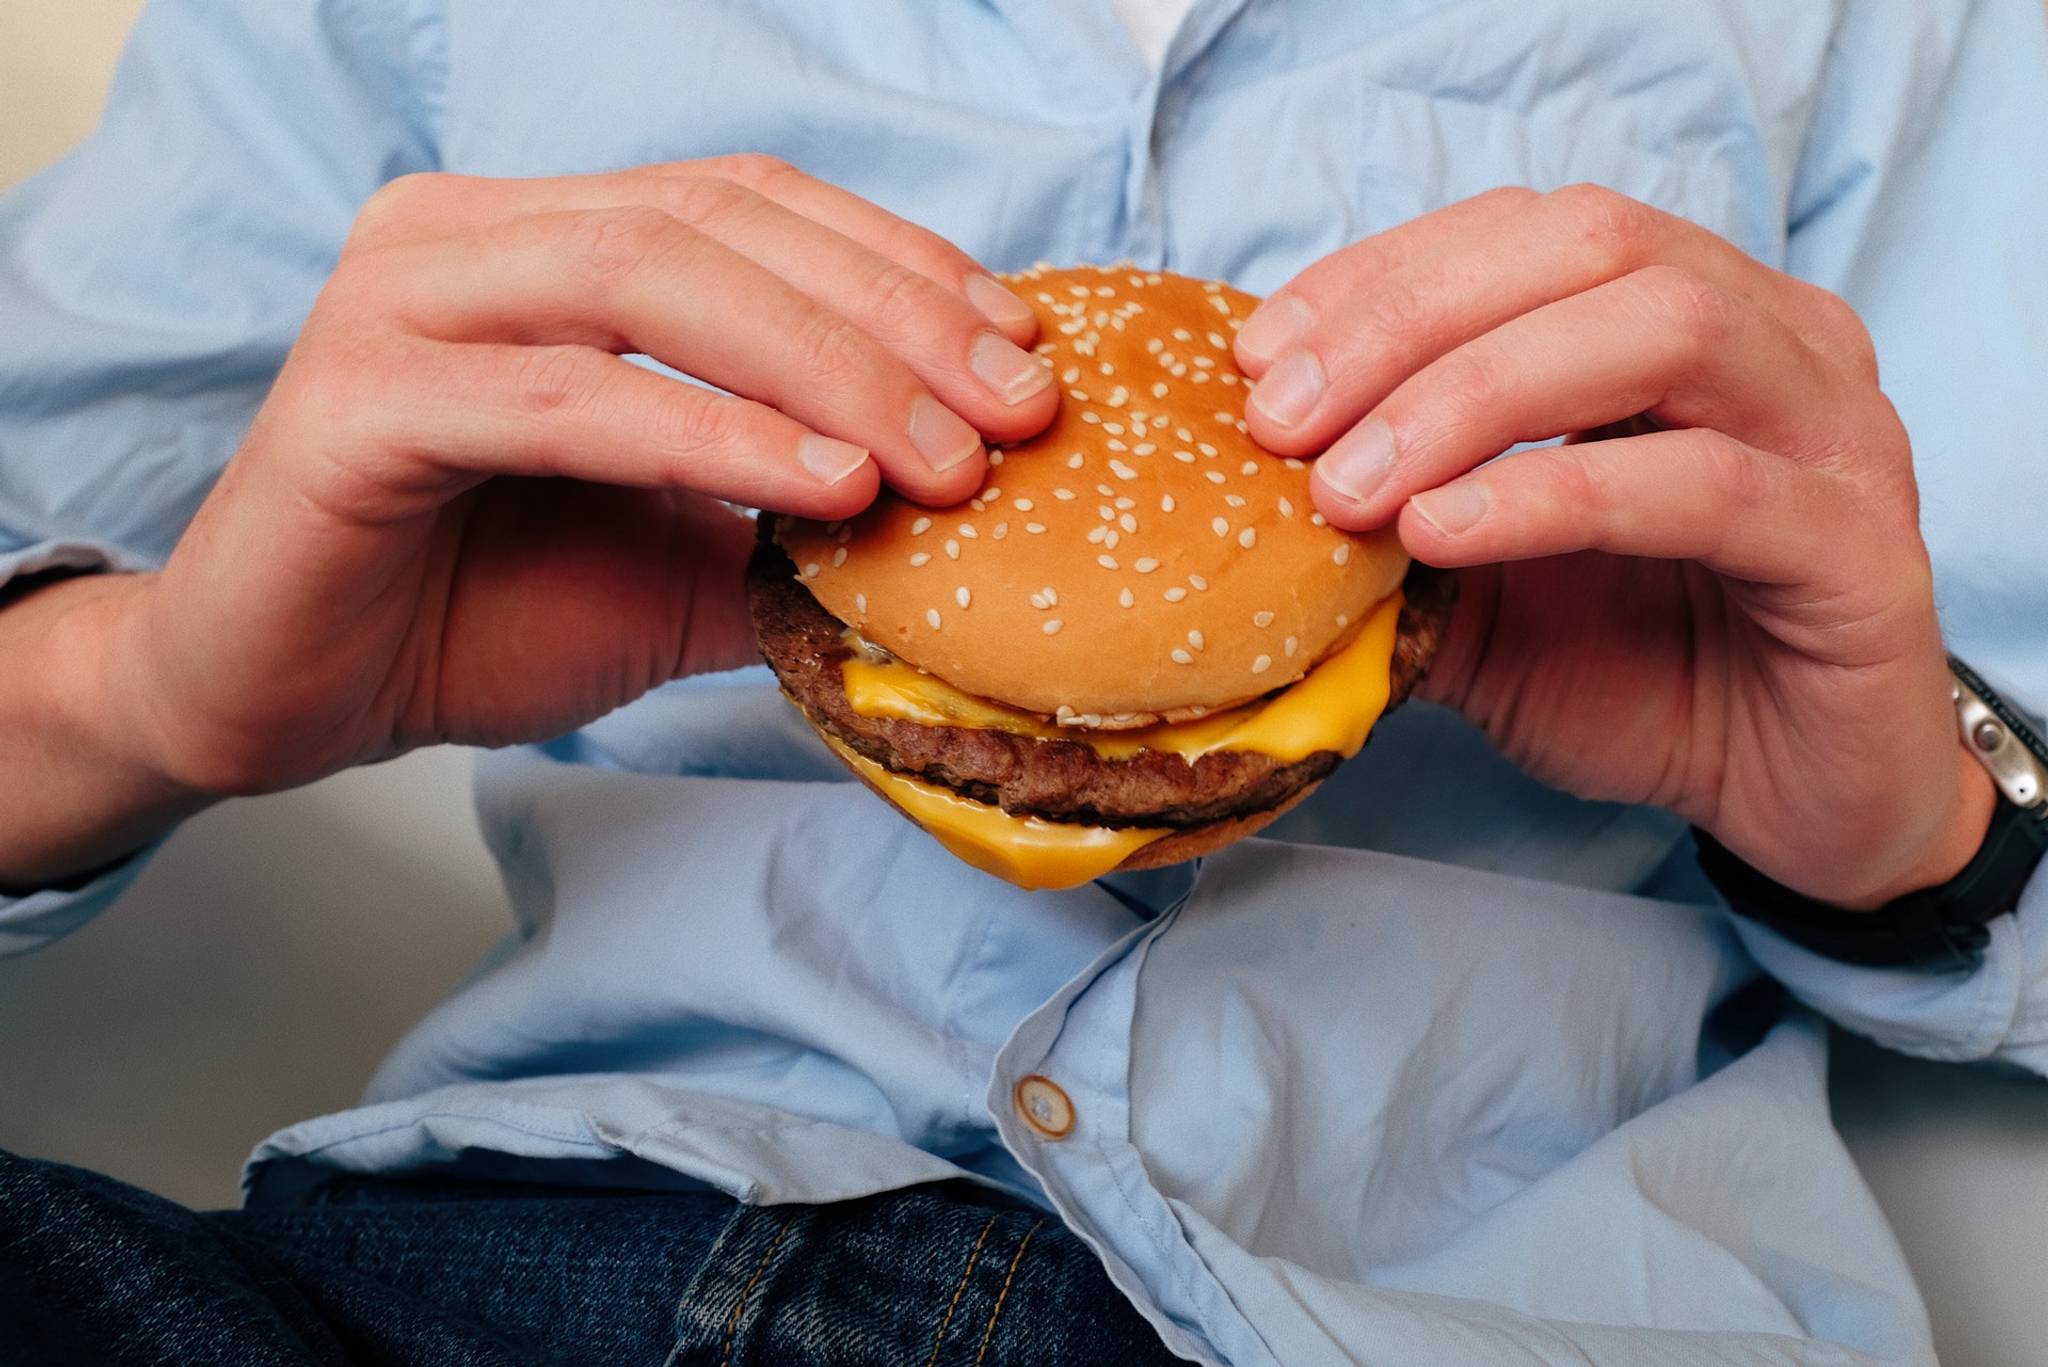 Burger King turns Tesla bug into viral ad campaign